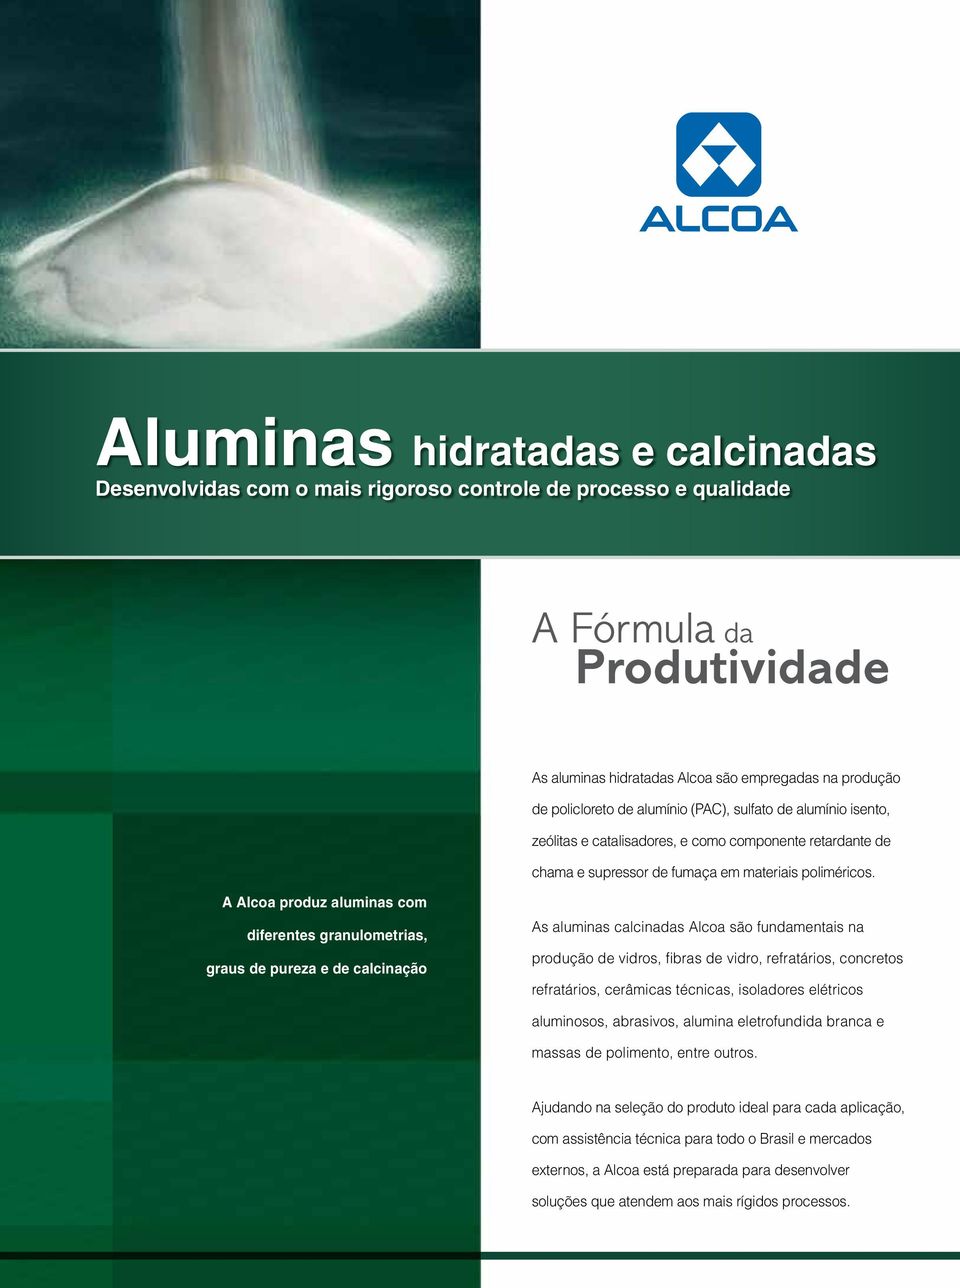 A Alcoa produz aluminas com diferentes granulometrias, graus de pureza e de calcinação As aluminas calcinadas Alcoa são fundamentais na produção de vidros, fibras de vidro, refratários, concretos